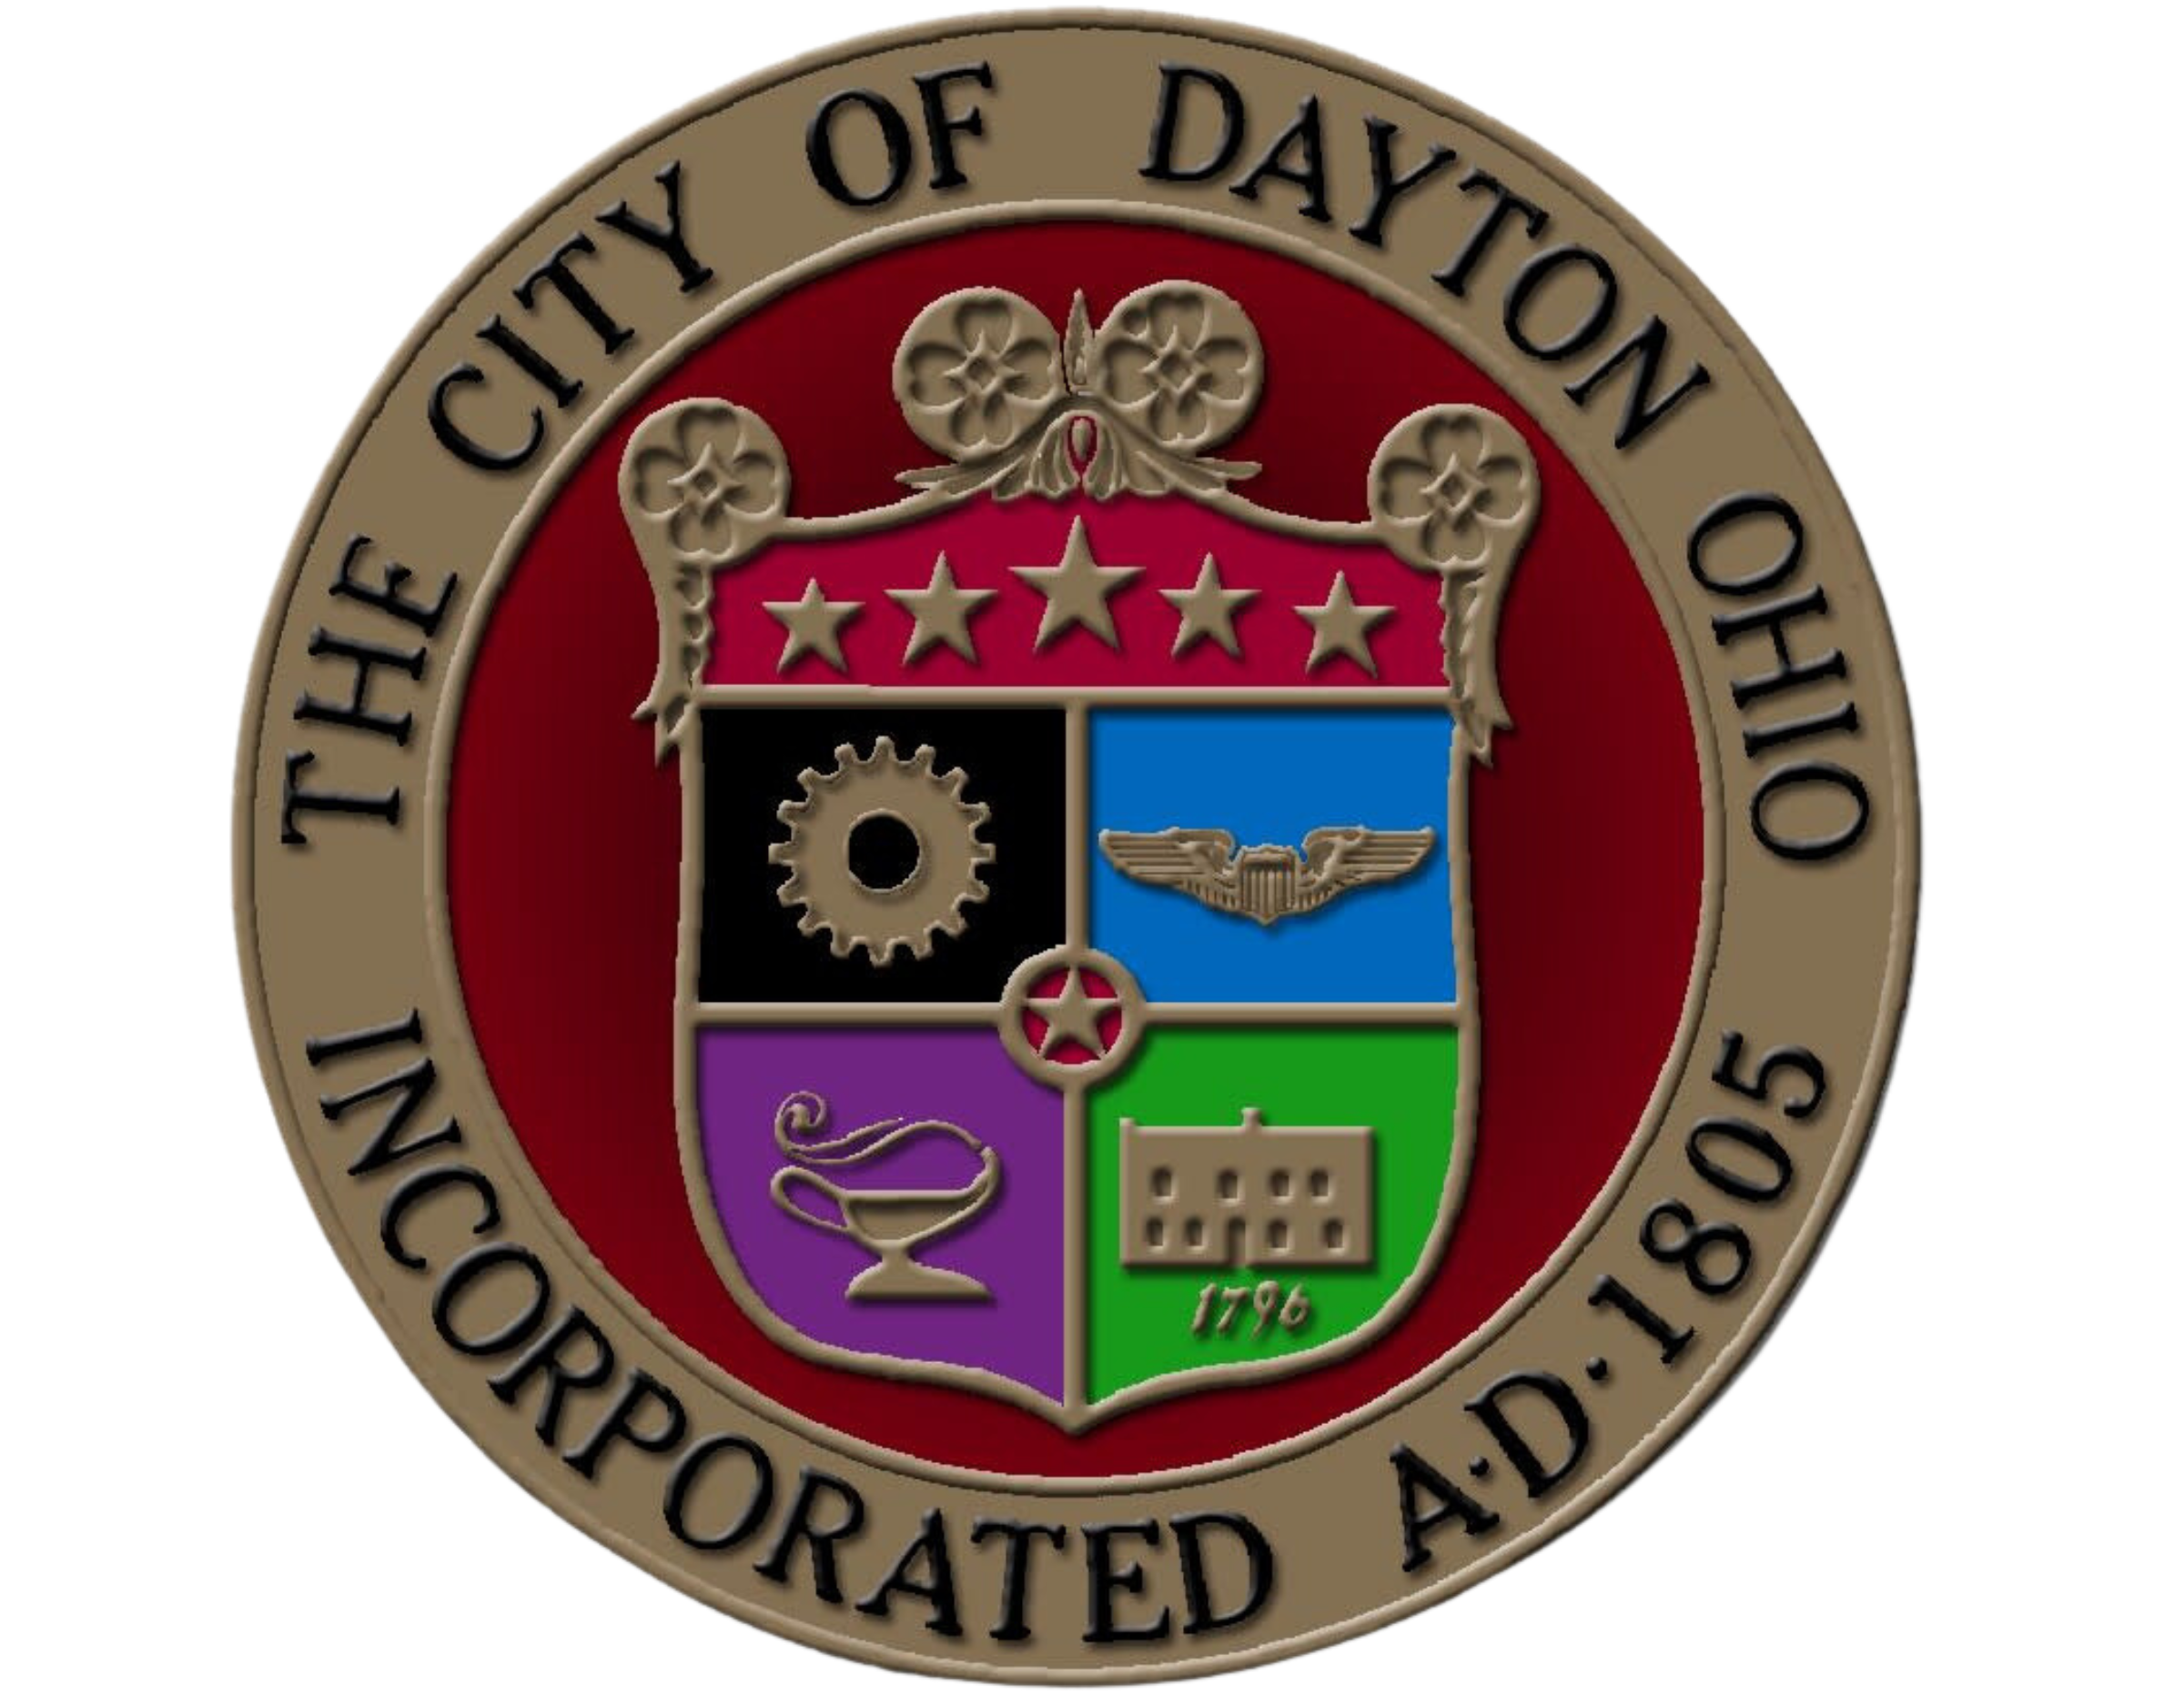 The flag of Dayton, Ohio, USA